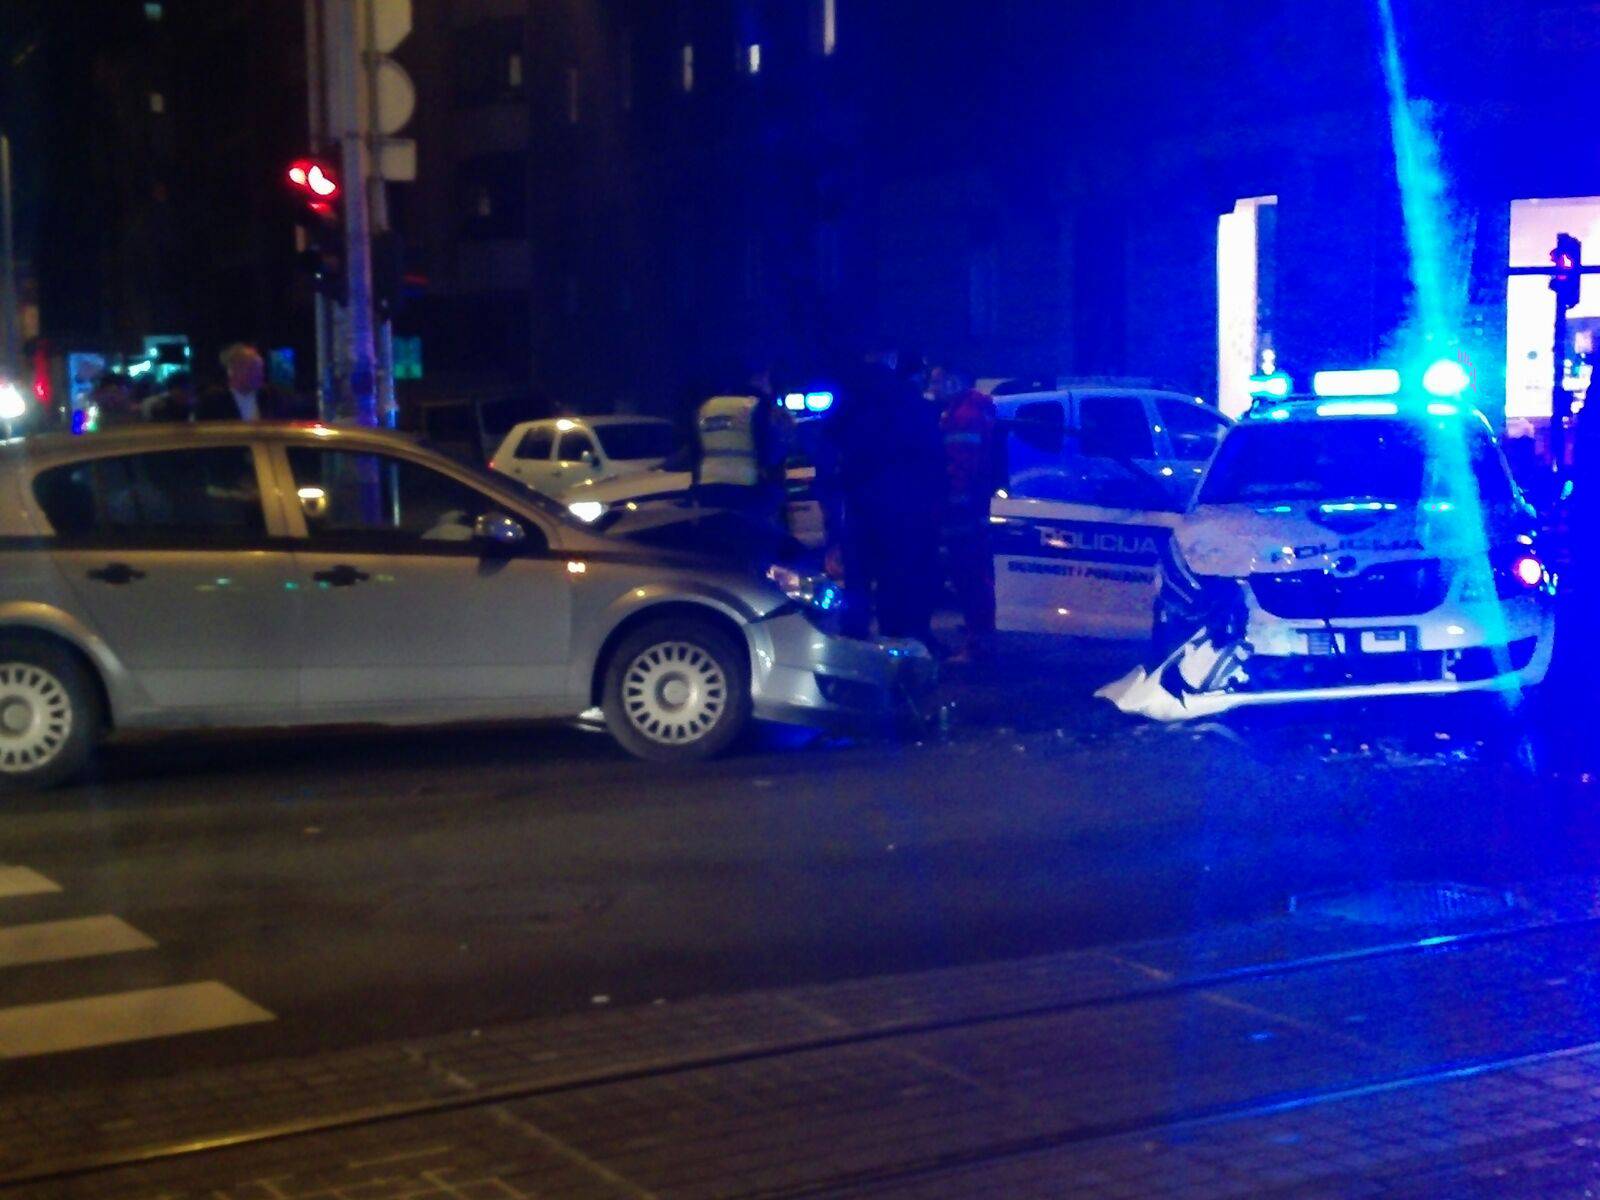 Nesreće u Zagrebu: U jednom sudaru smrskan policijski auto